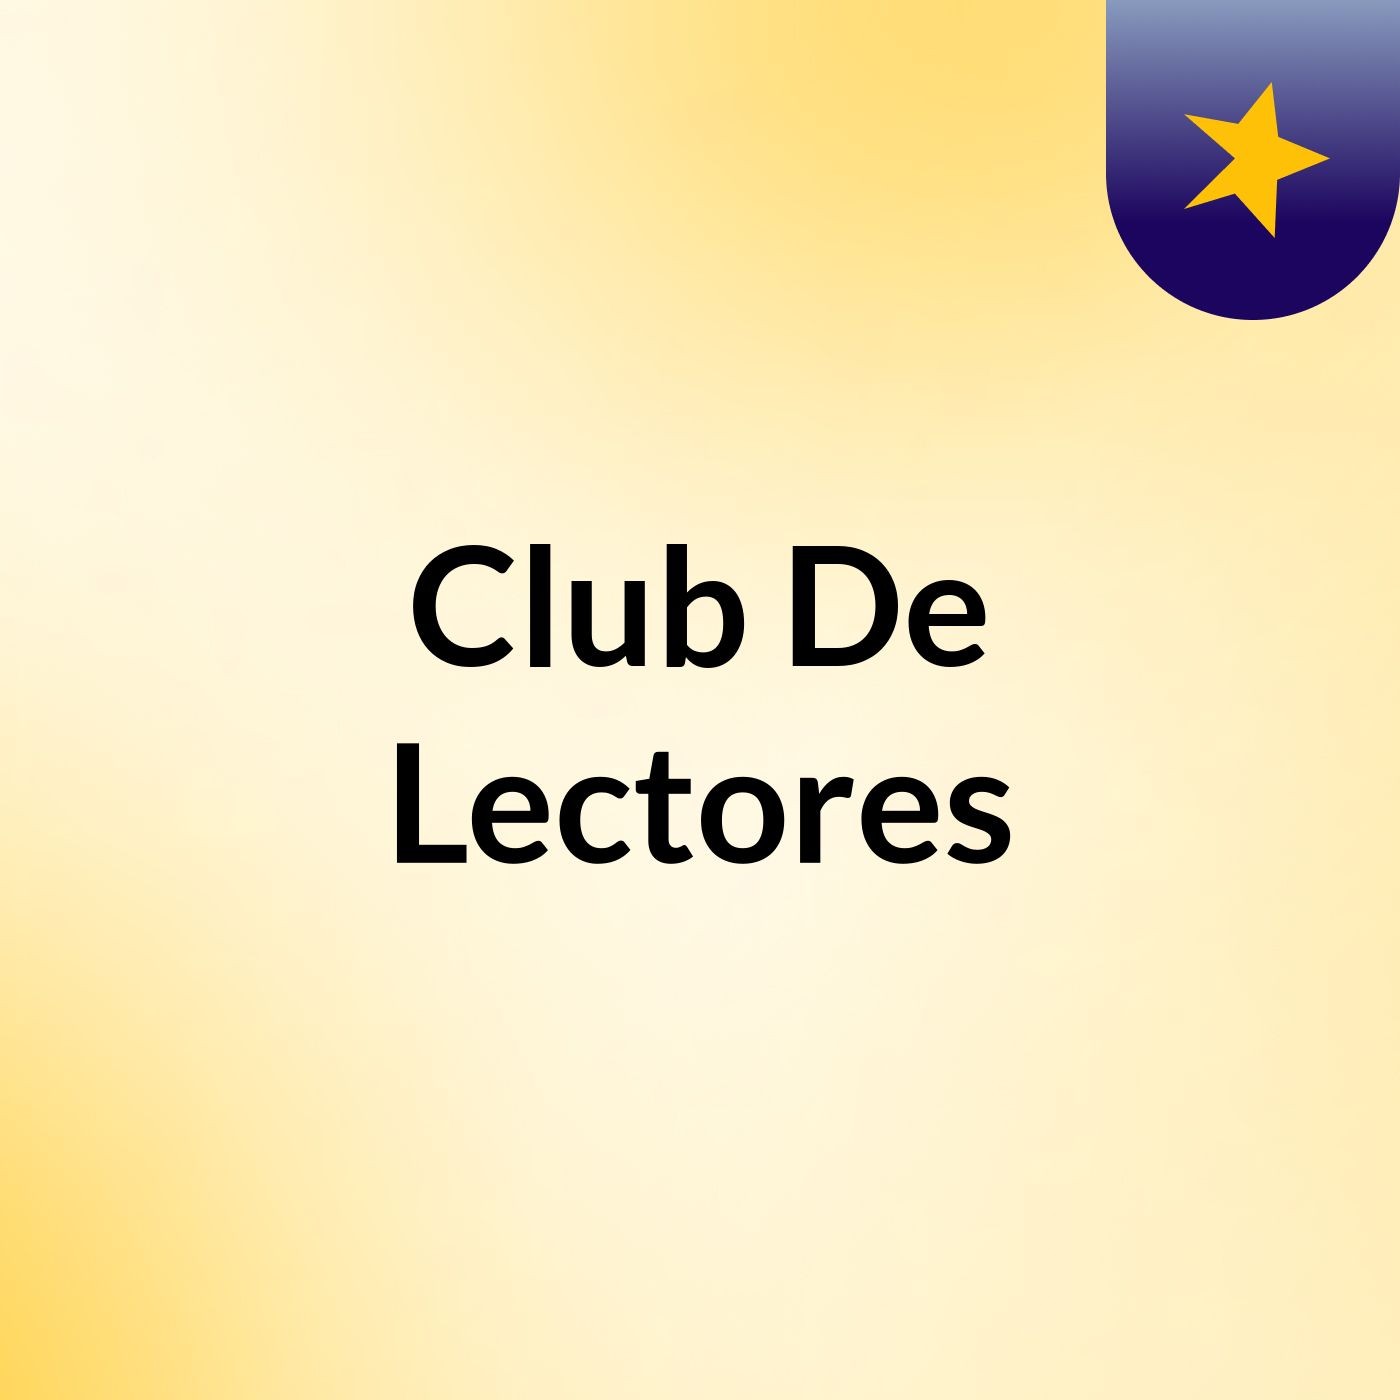 Club De Lectores